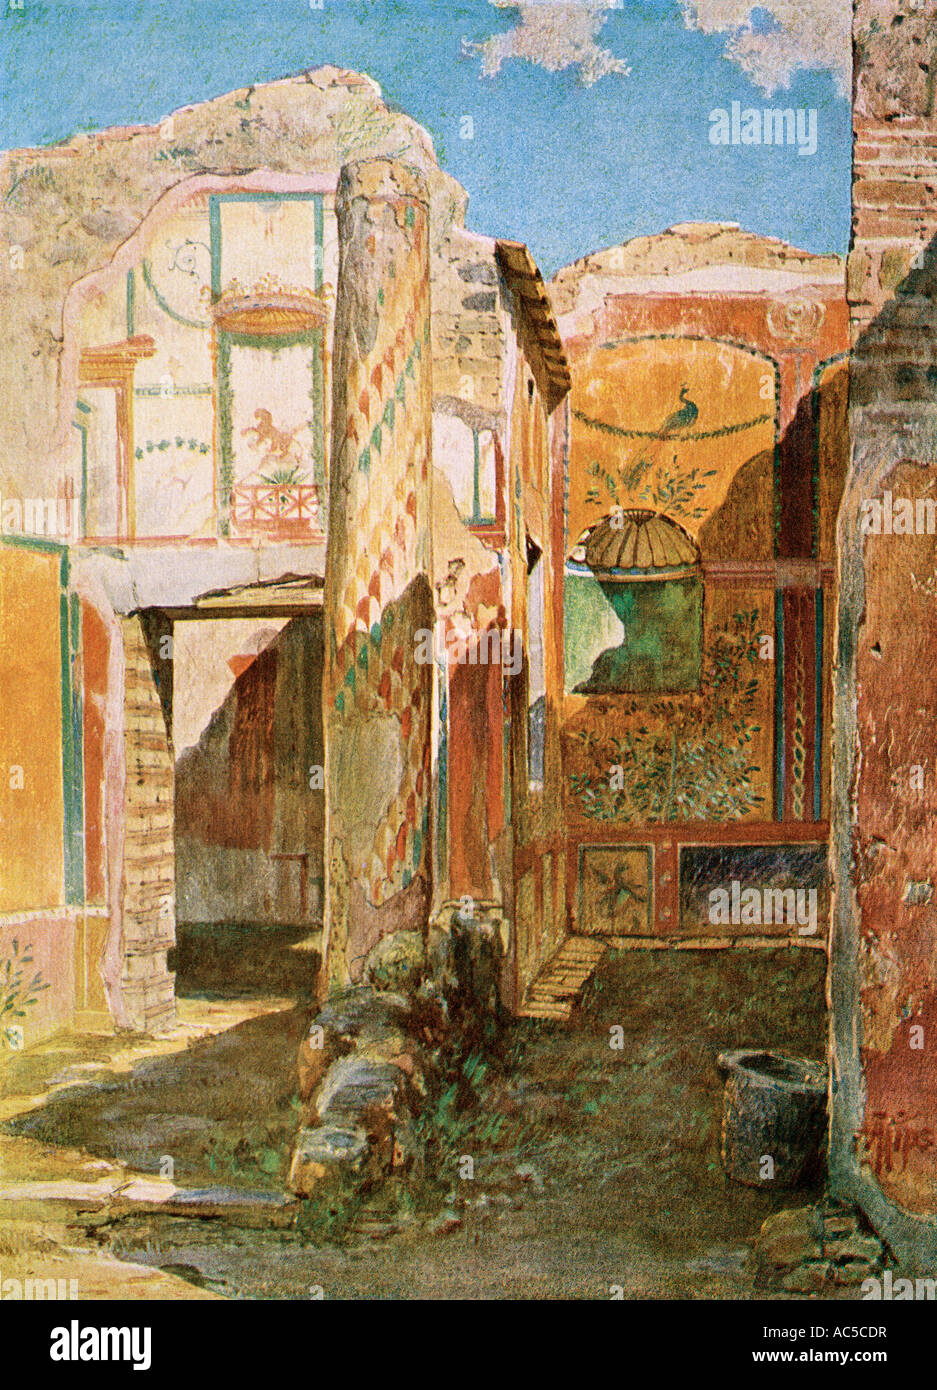 Restos de una casa en Pompeya interior desde el período del Imperio romano enterrado en la erupción del Monte Vesubio. Litografía de color Foto de stock